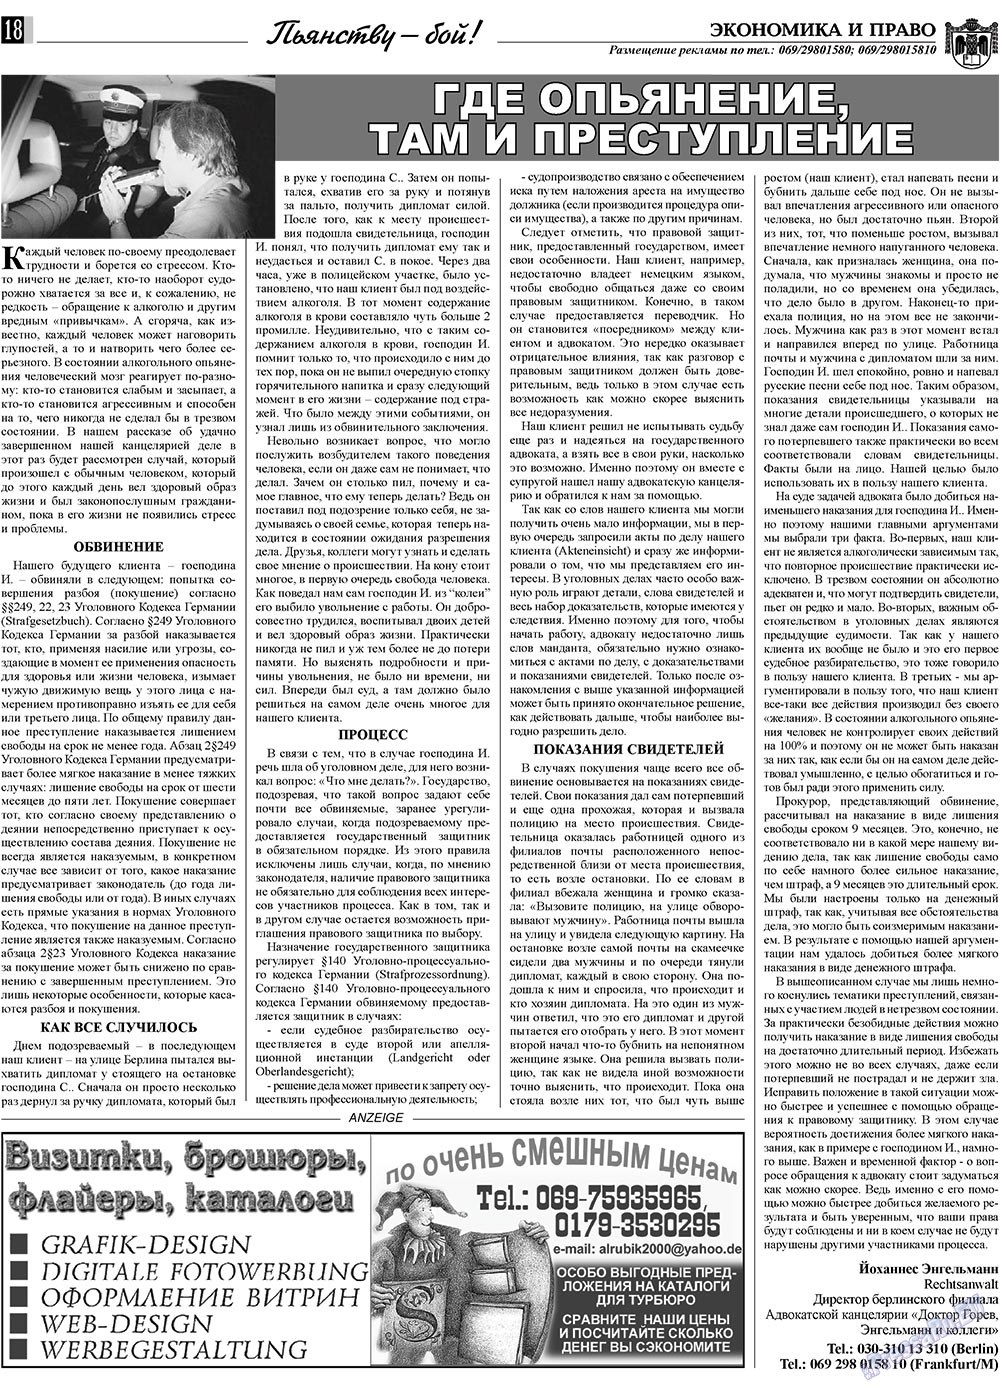 Экономика и право, газета. 2010 №3 стр.18